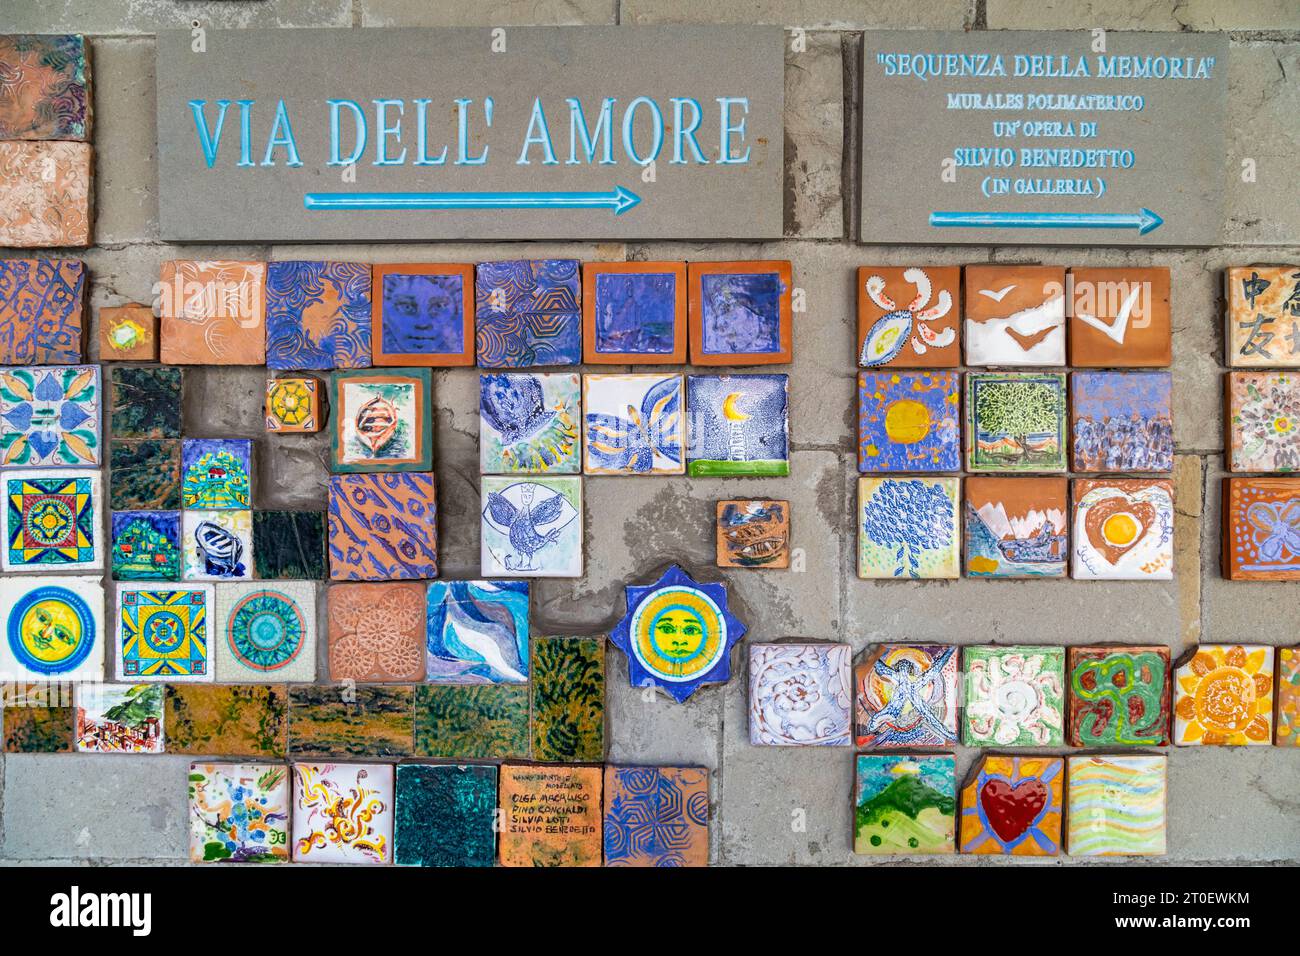 Italy, Liguria, province of La Spezia, Cinque Terre, artistic installation of decorated and colorful tiles at the entrance to the Via dell'Amore in Riomaggiore Stock Photo